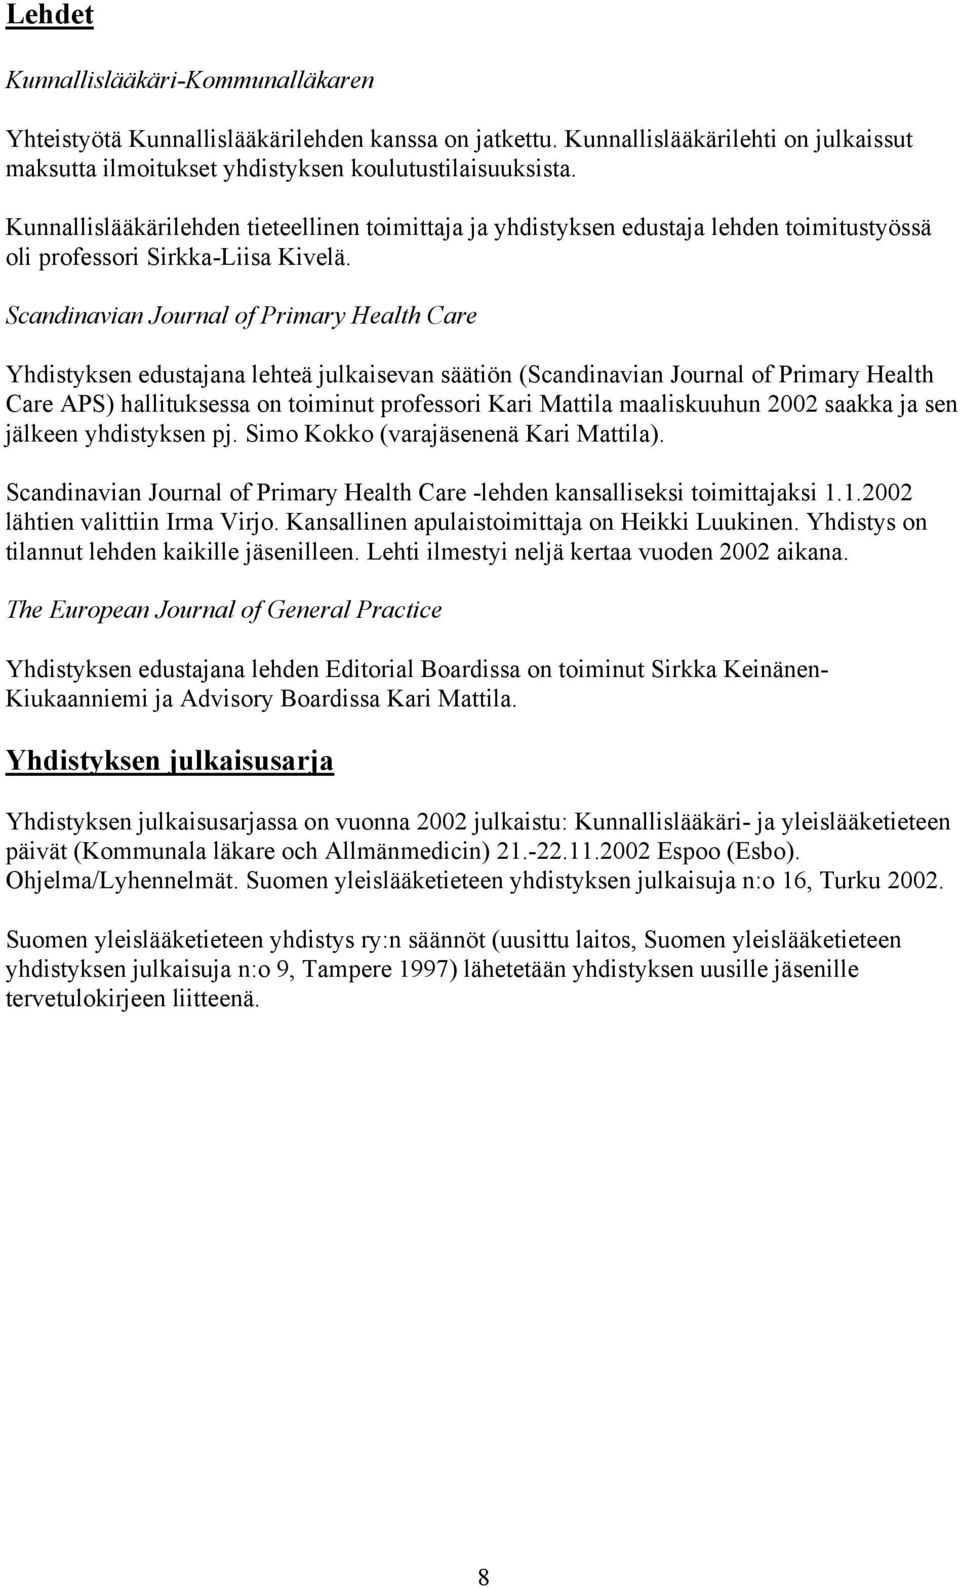 Scandinavian Journal of Primary Health Care Yhdistyksen edustajana lehteä julkaisevan säätiön (Scandinavian Journal of Primary Health Care APS) hallituksessa on toiminut professori Kari Mattila